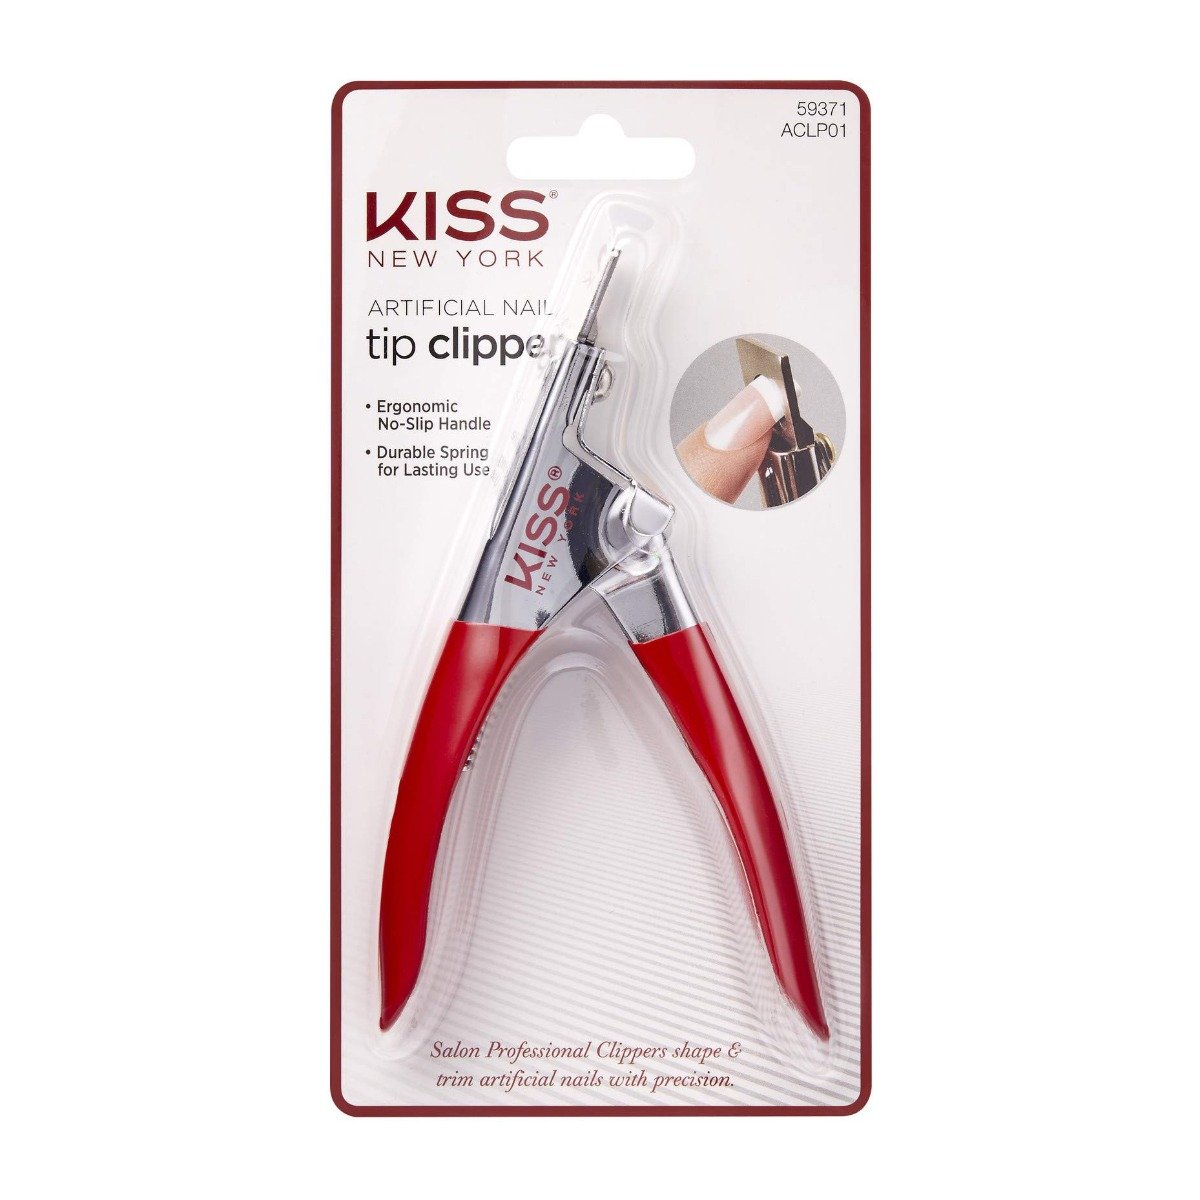 Kiss Artificial Nail Tip Clipper Aclp01 - 59371 - Bloom Pharmacy